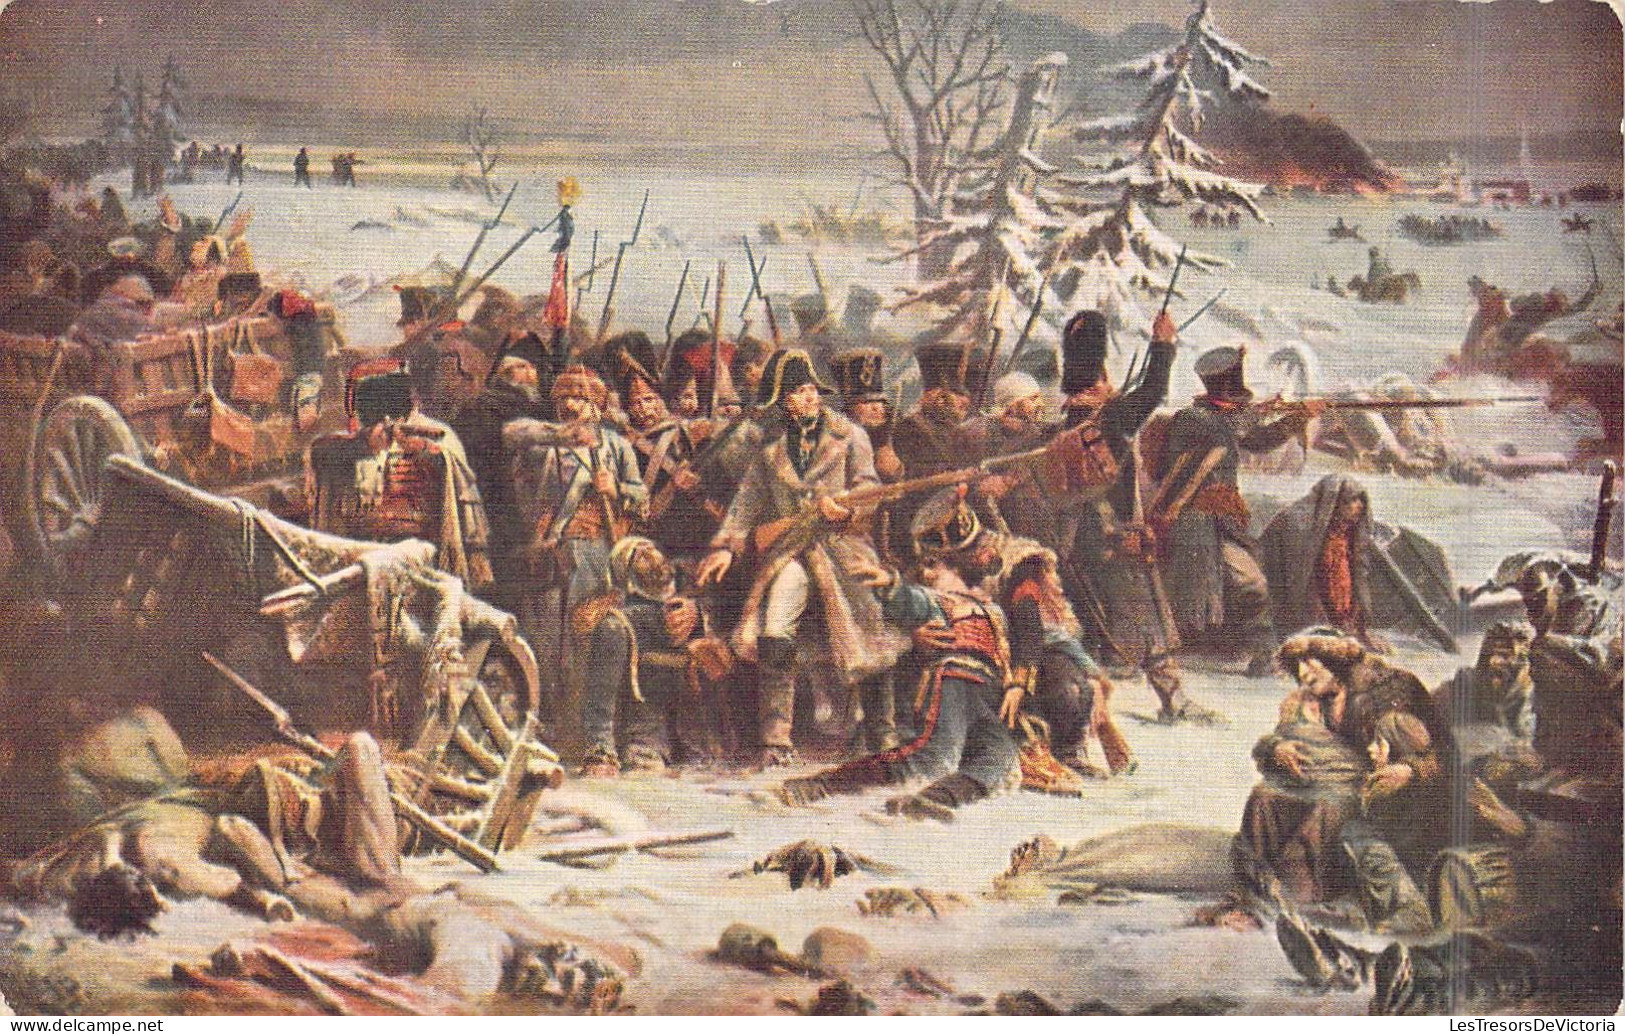 Militaria - Guerres - Retraite De Russie - Décembre 1812 - Carte Postale Ancienne - Other Wars